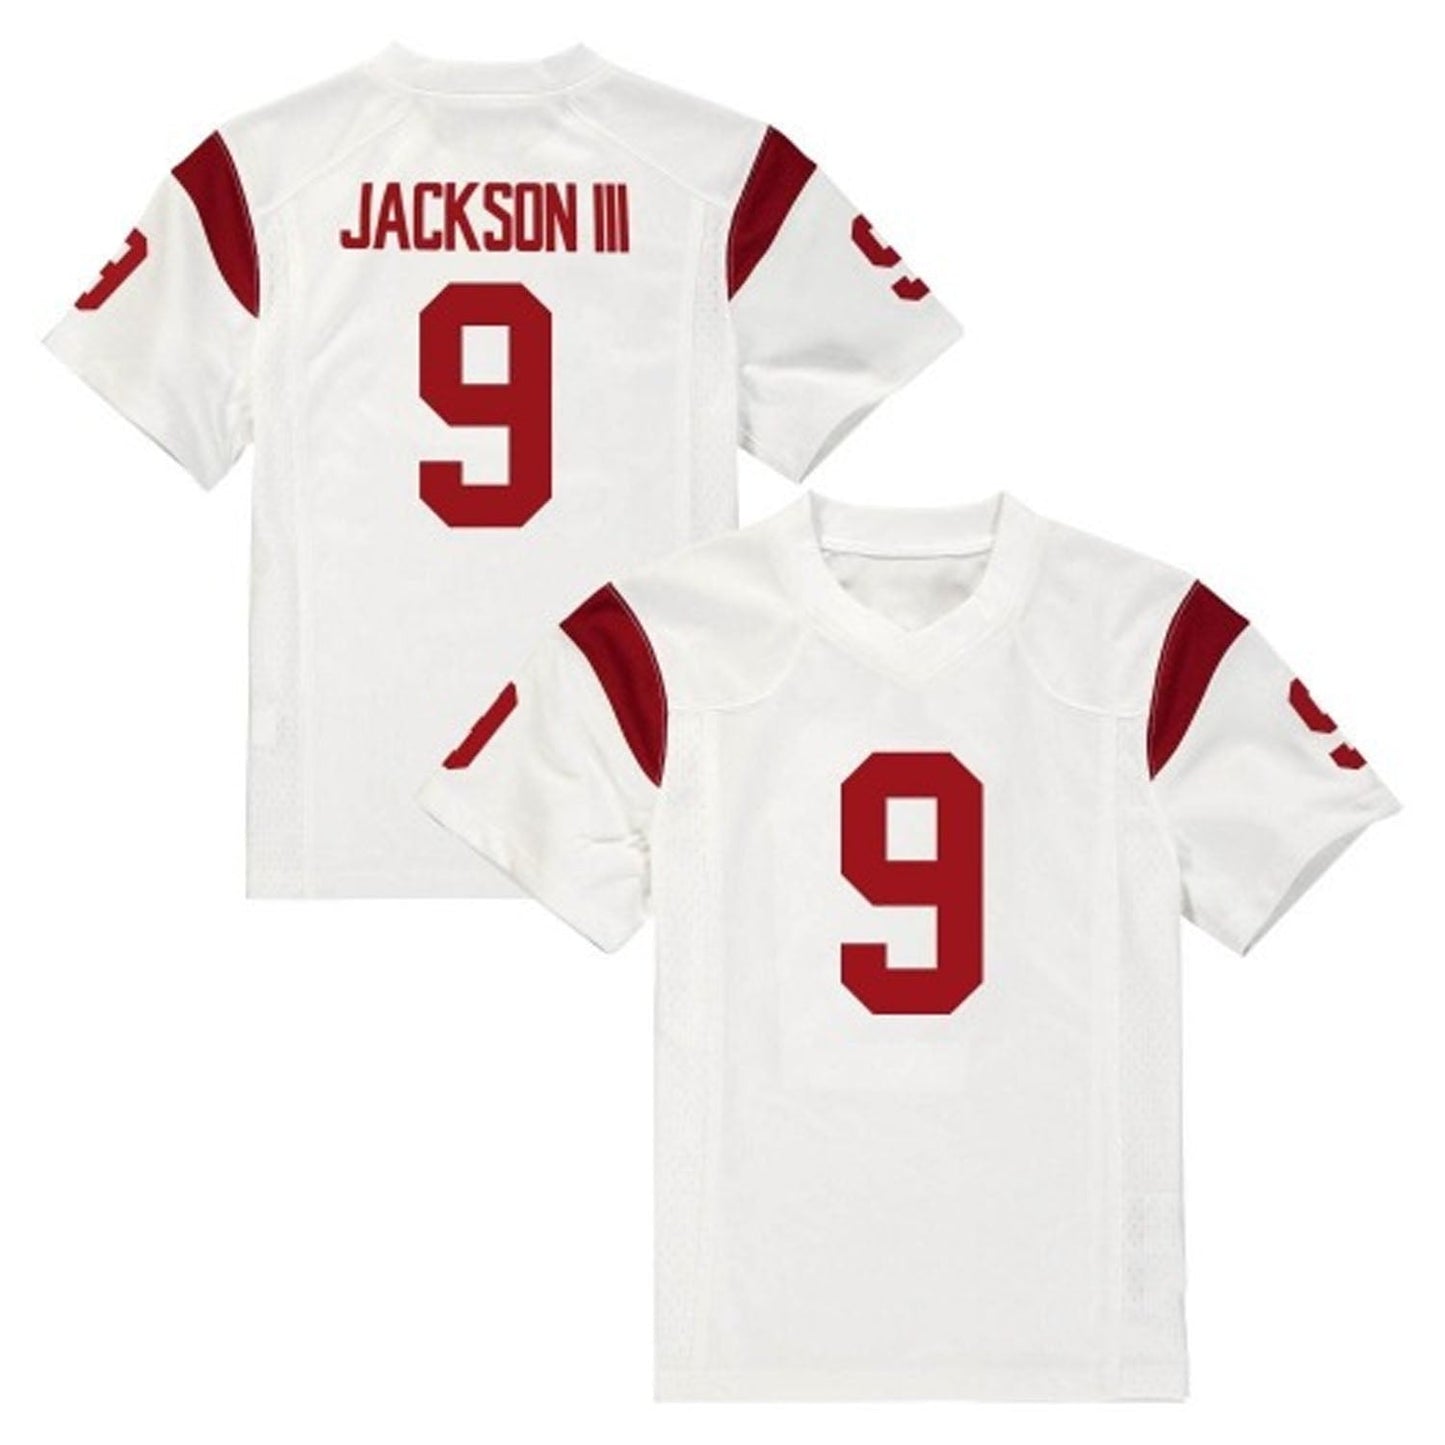 NCAAF Michael Jackson III USC 9 Jersey